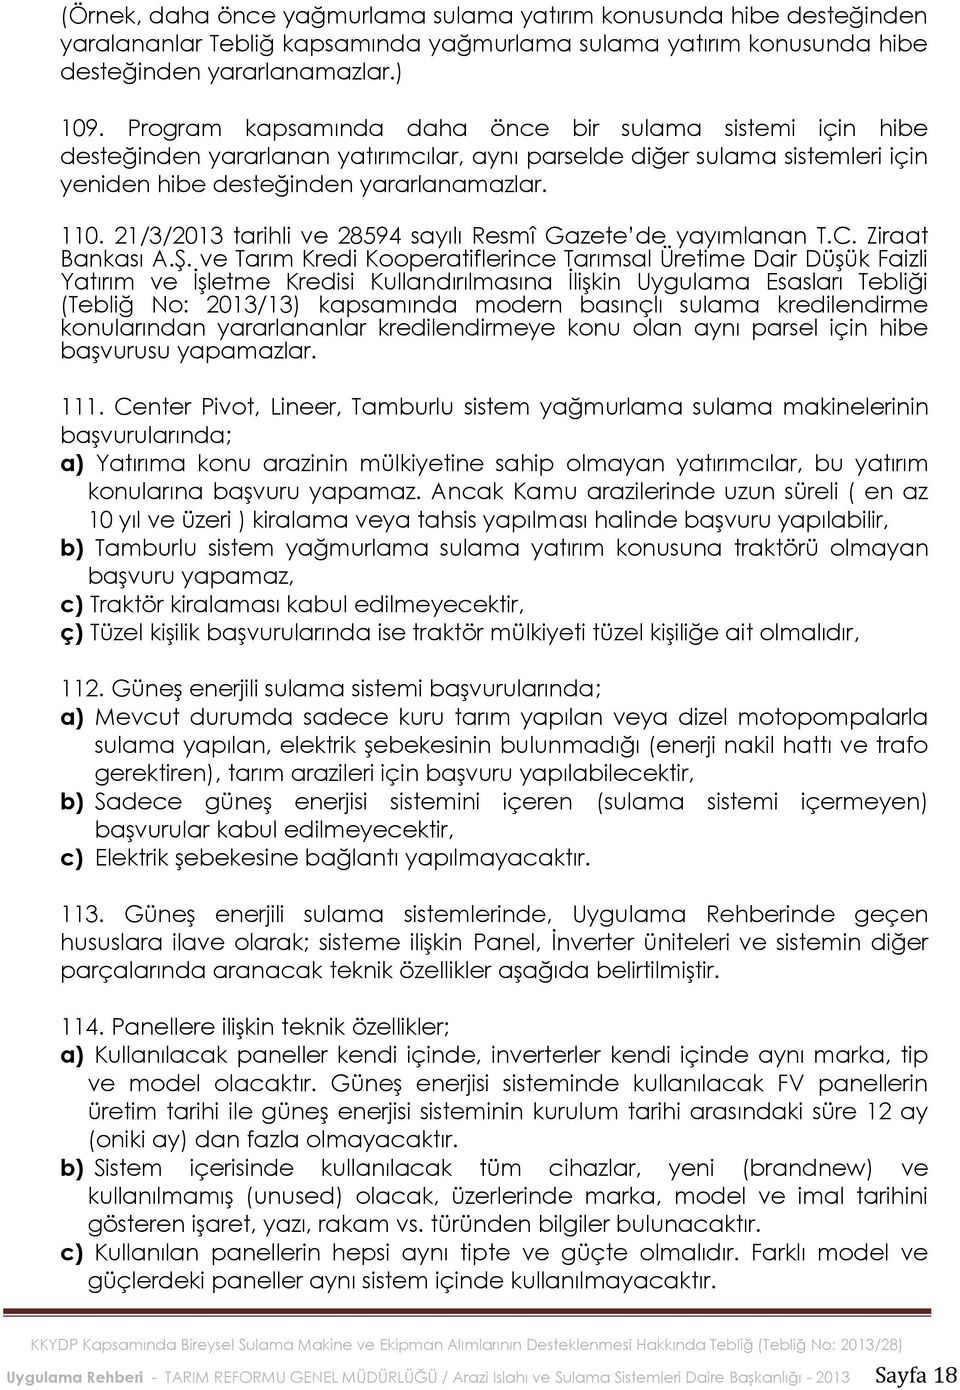 21/3/2013 tarihli ve 28594 sayılı Resmî Gazete de yayımlanan T.C. Ziraat Bankası A.Ş.